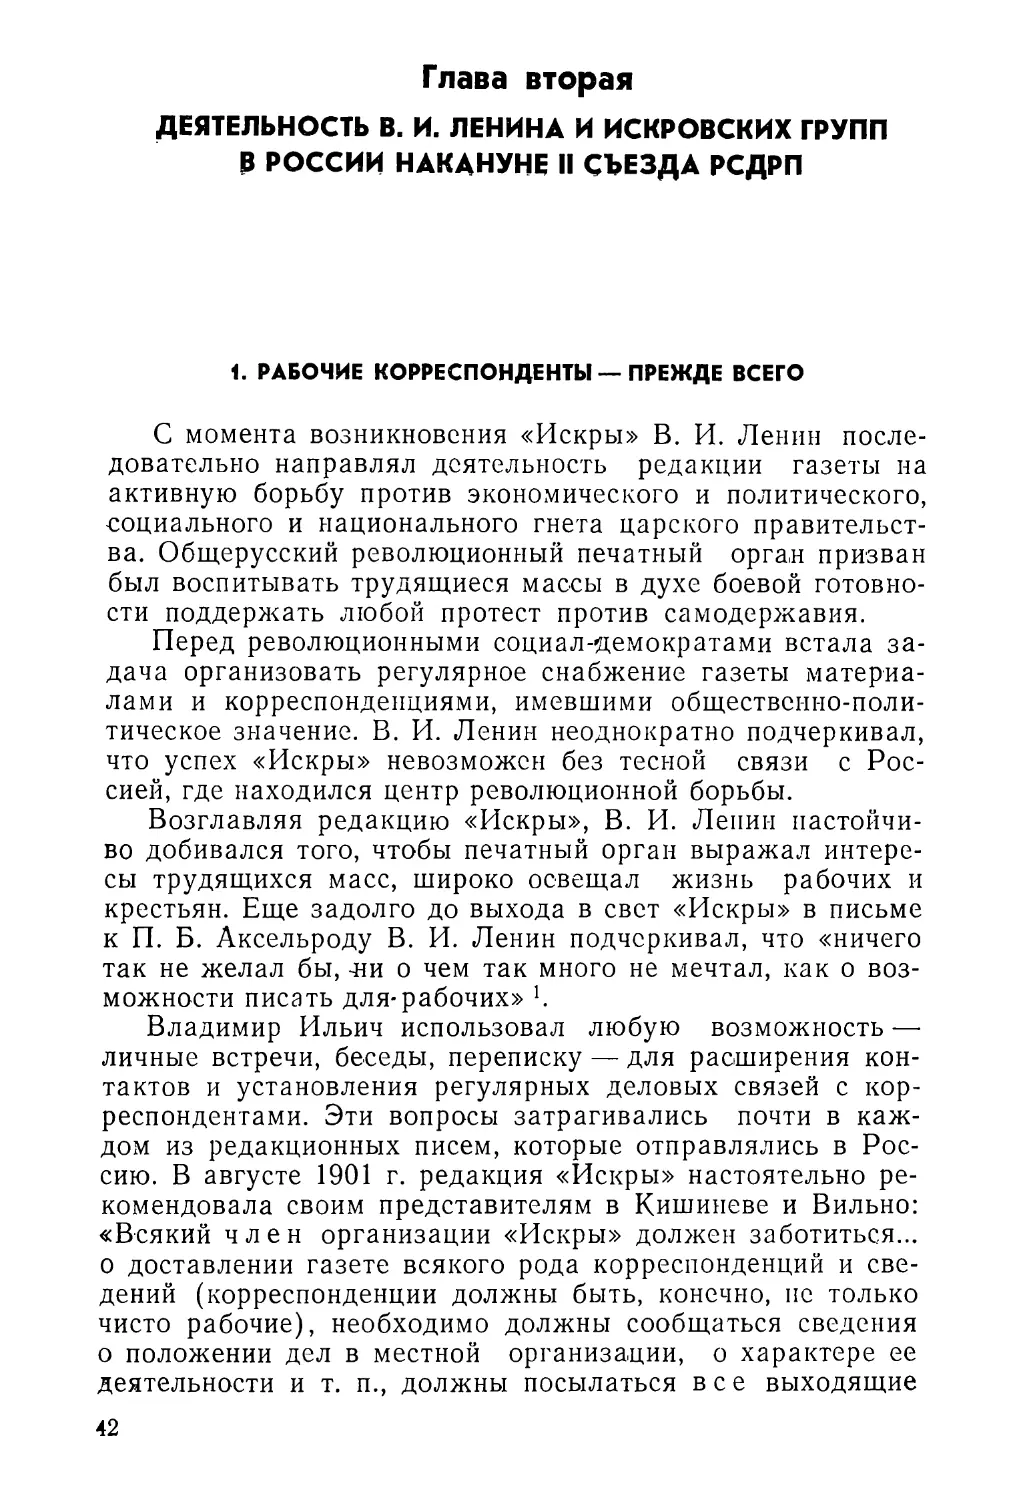 Глава вторая. Деятельность В. И. Ленина и искровских групп в России накануне II съезда РСДРП